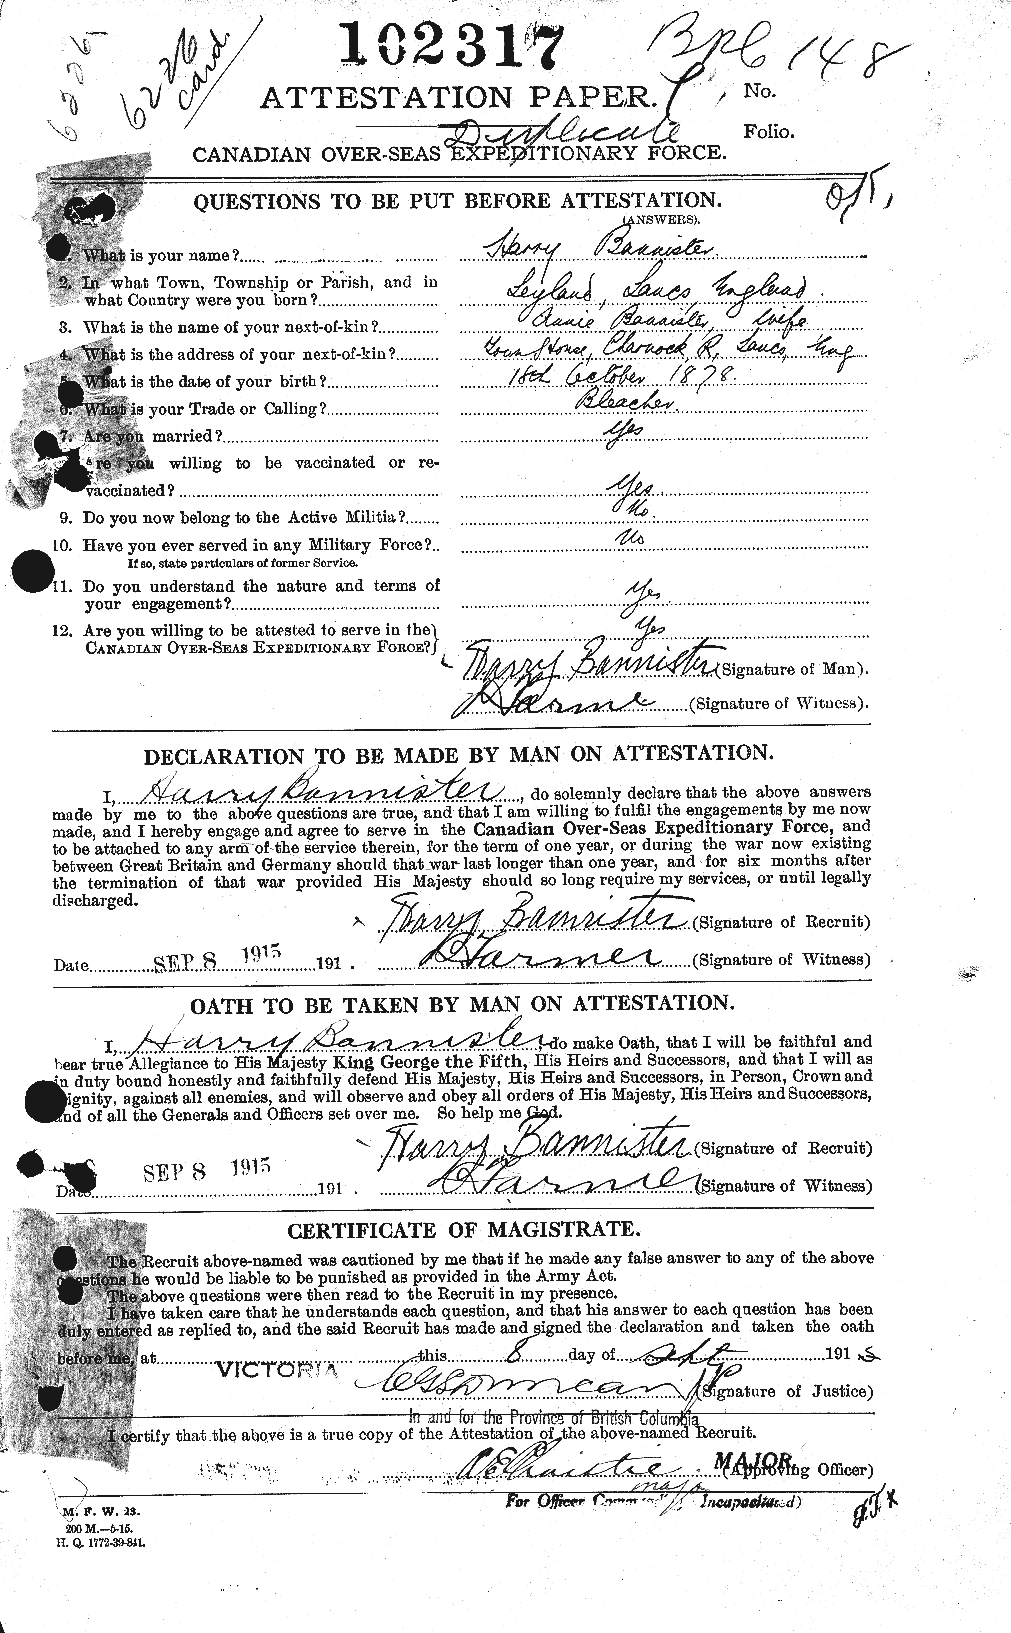 Dossiers du Personnel de la Première Guerre mondiale - CEC 224792a